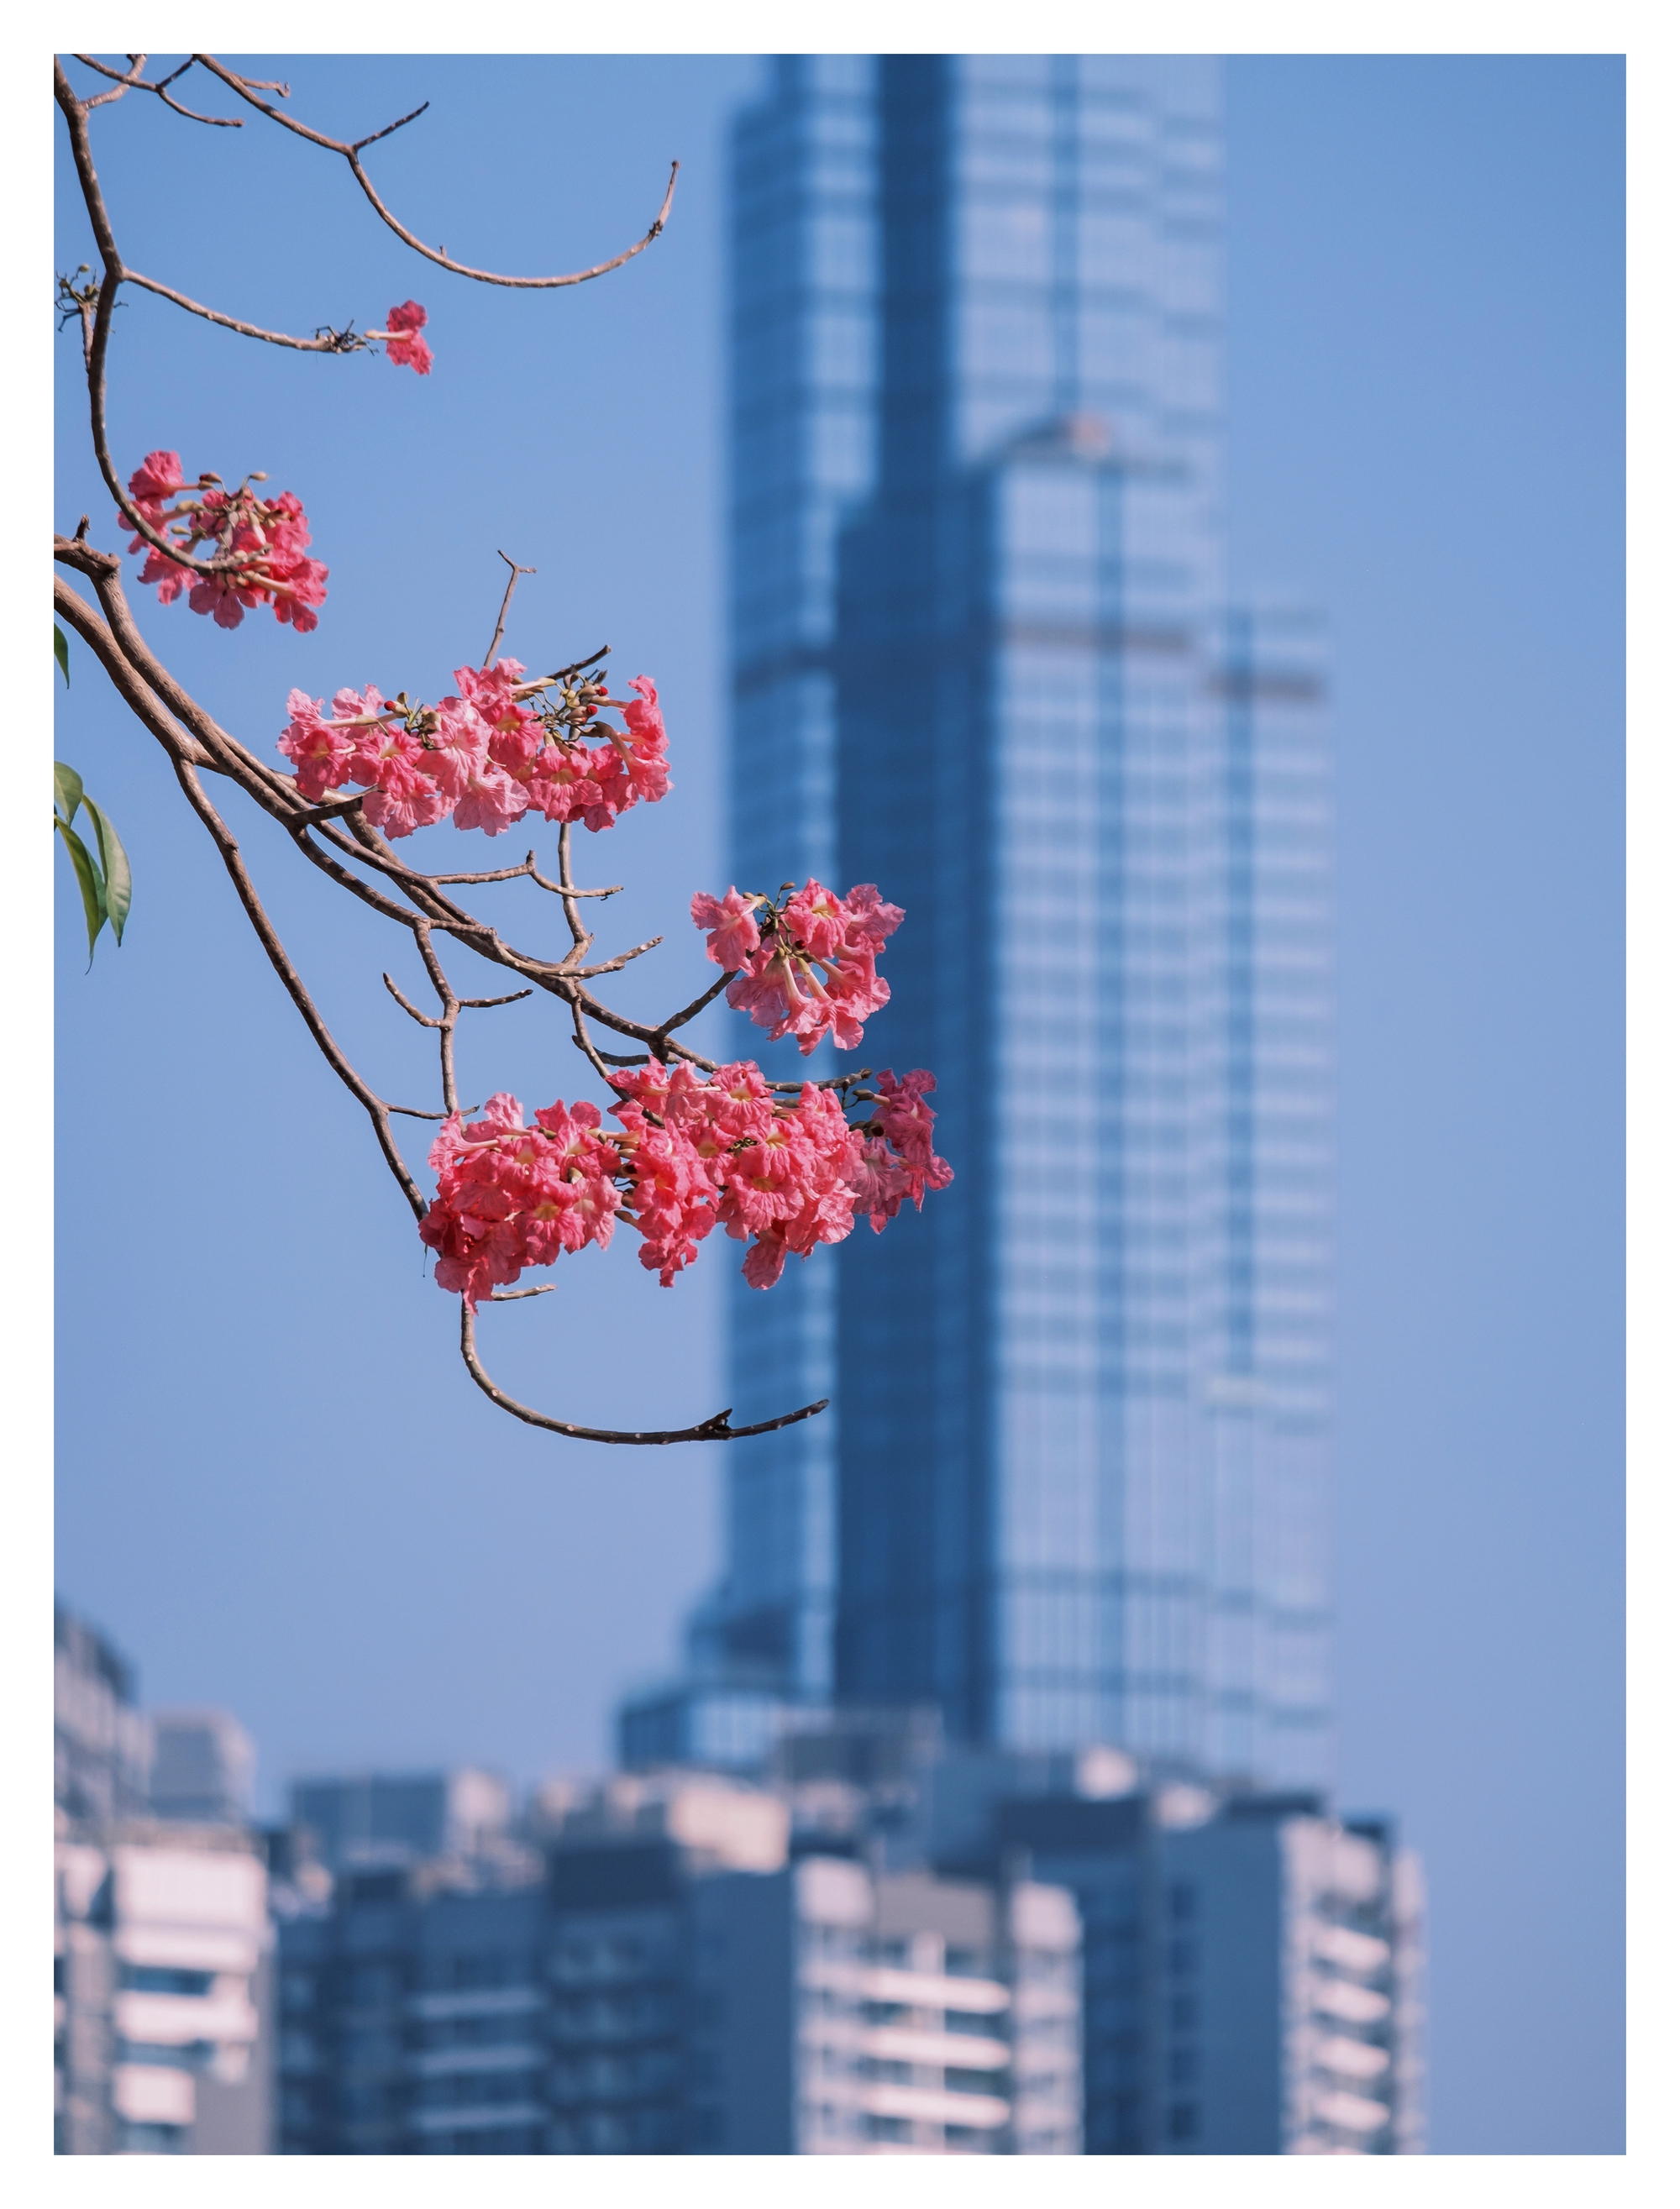 Mùa kèn hồng rợp trời Sài Gòn, chợt thấy thành phố mộng mơ biết bao giữa sắc hoa rực rỡ- Ảnh 12.